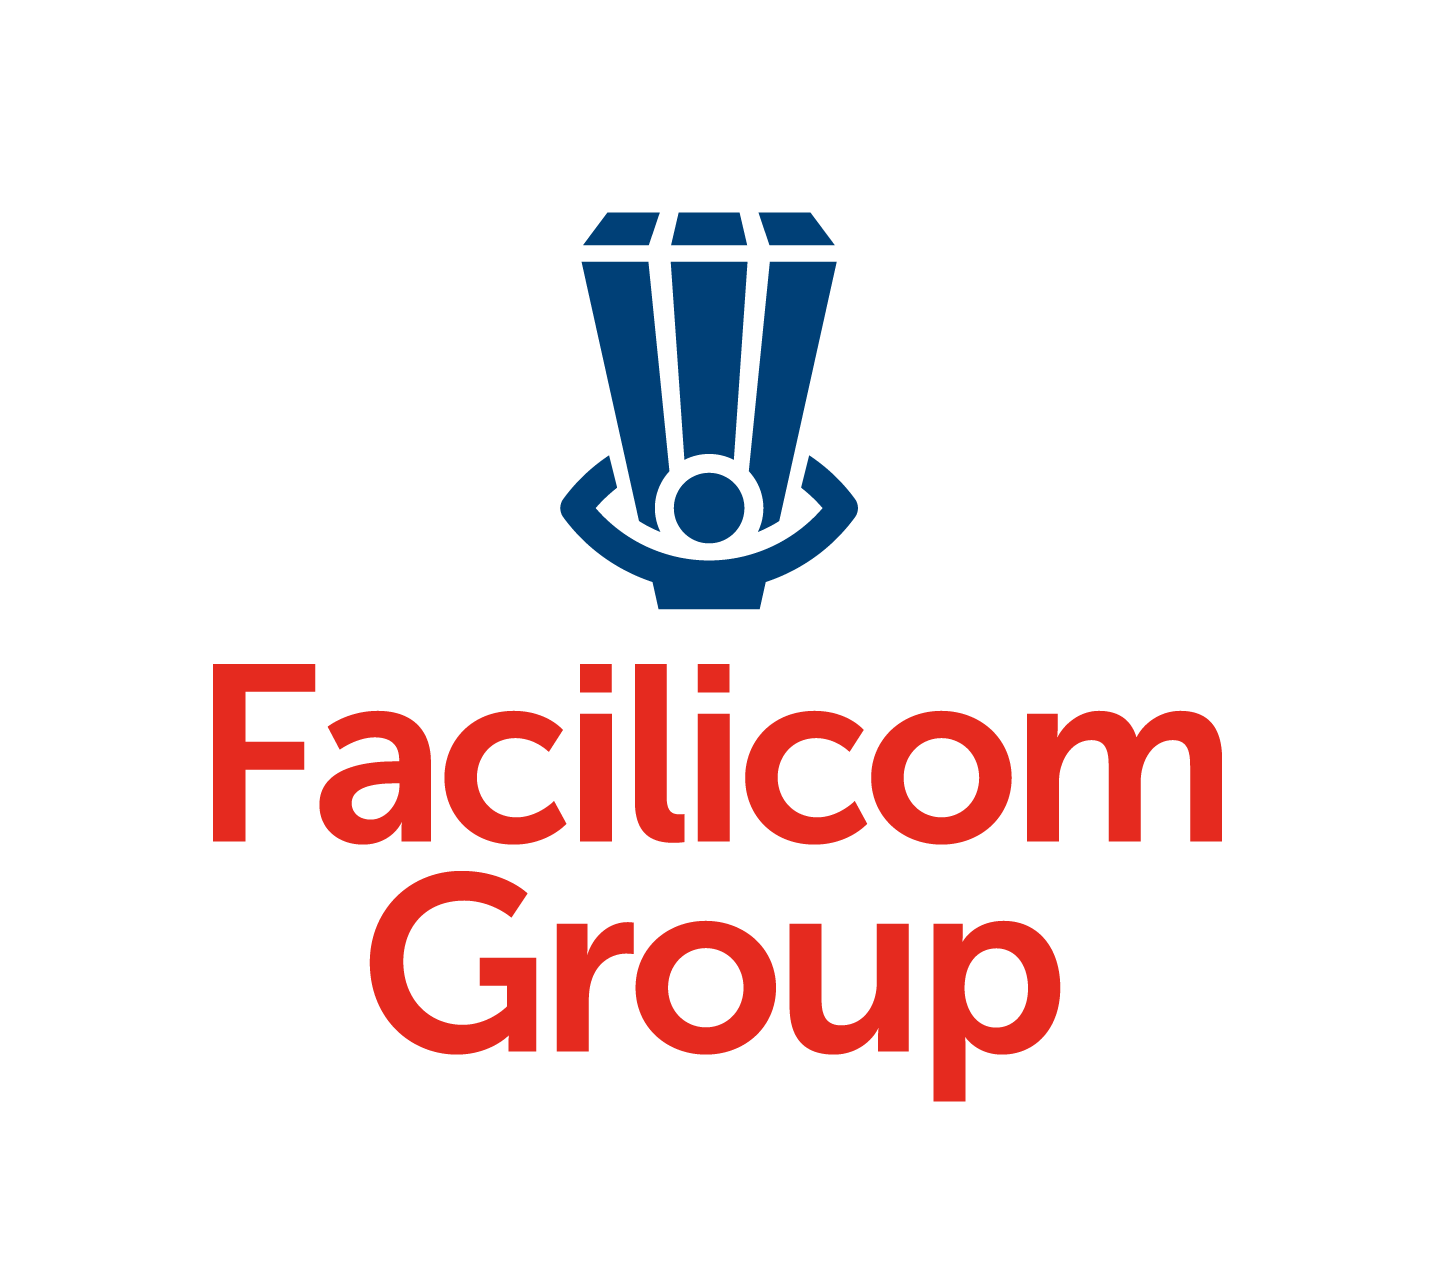 logo-facilicom-group